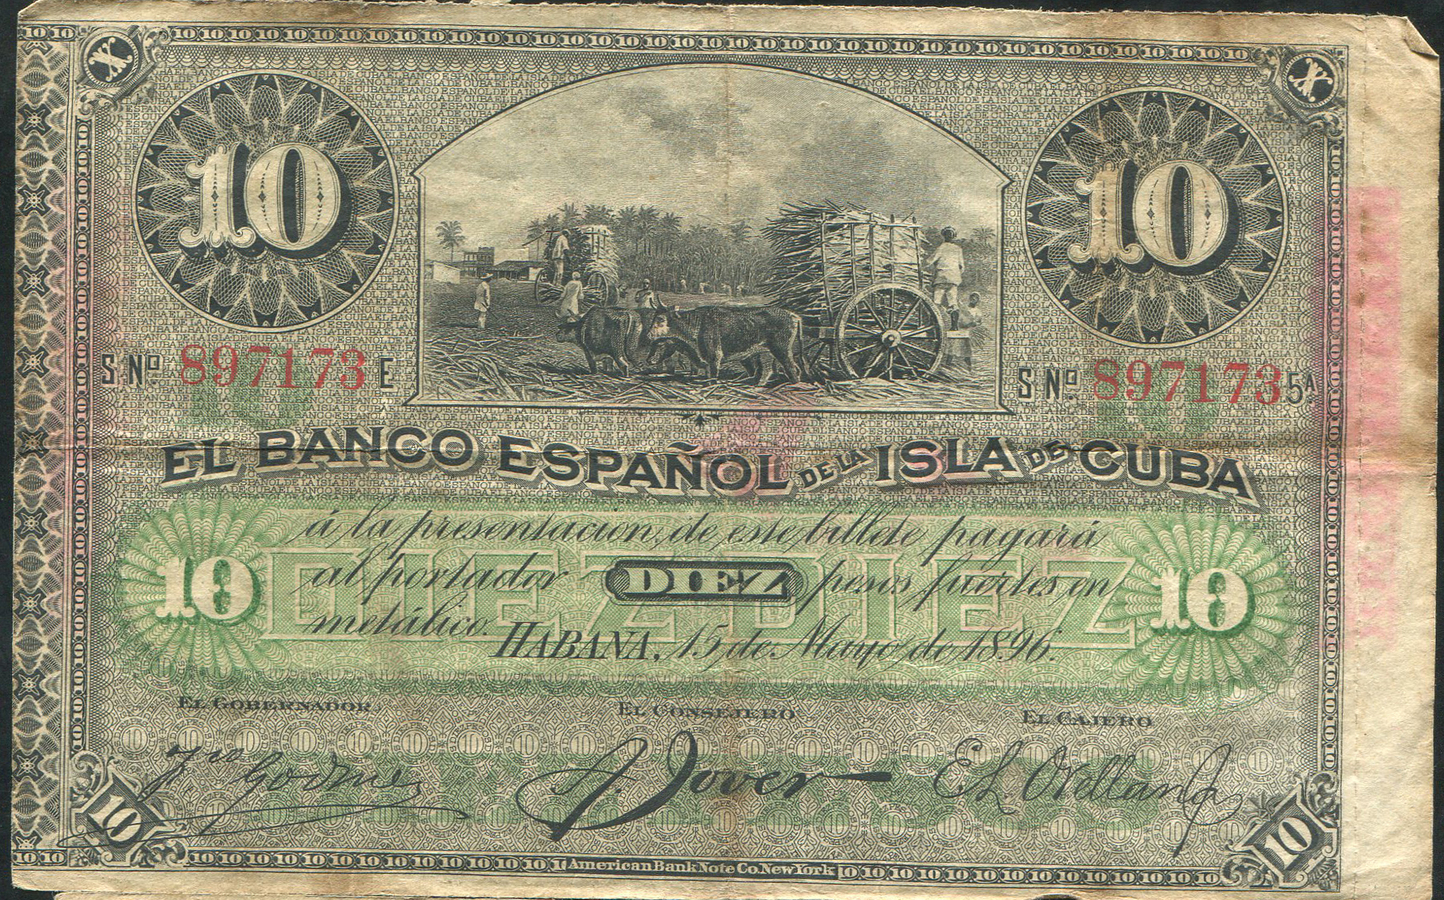 Кубы сс. Бумажные деньги Кубы. Кубинское песо банкноты. Банкноты старые Куба. 1 Песо Куба банкнота 1896 UNC.